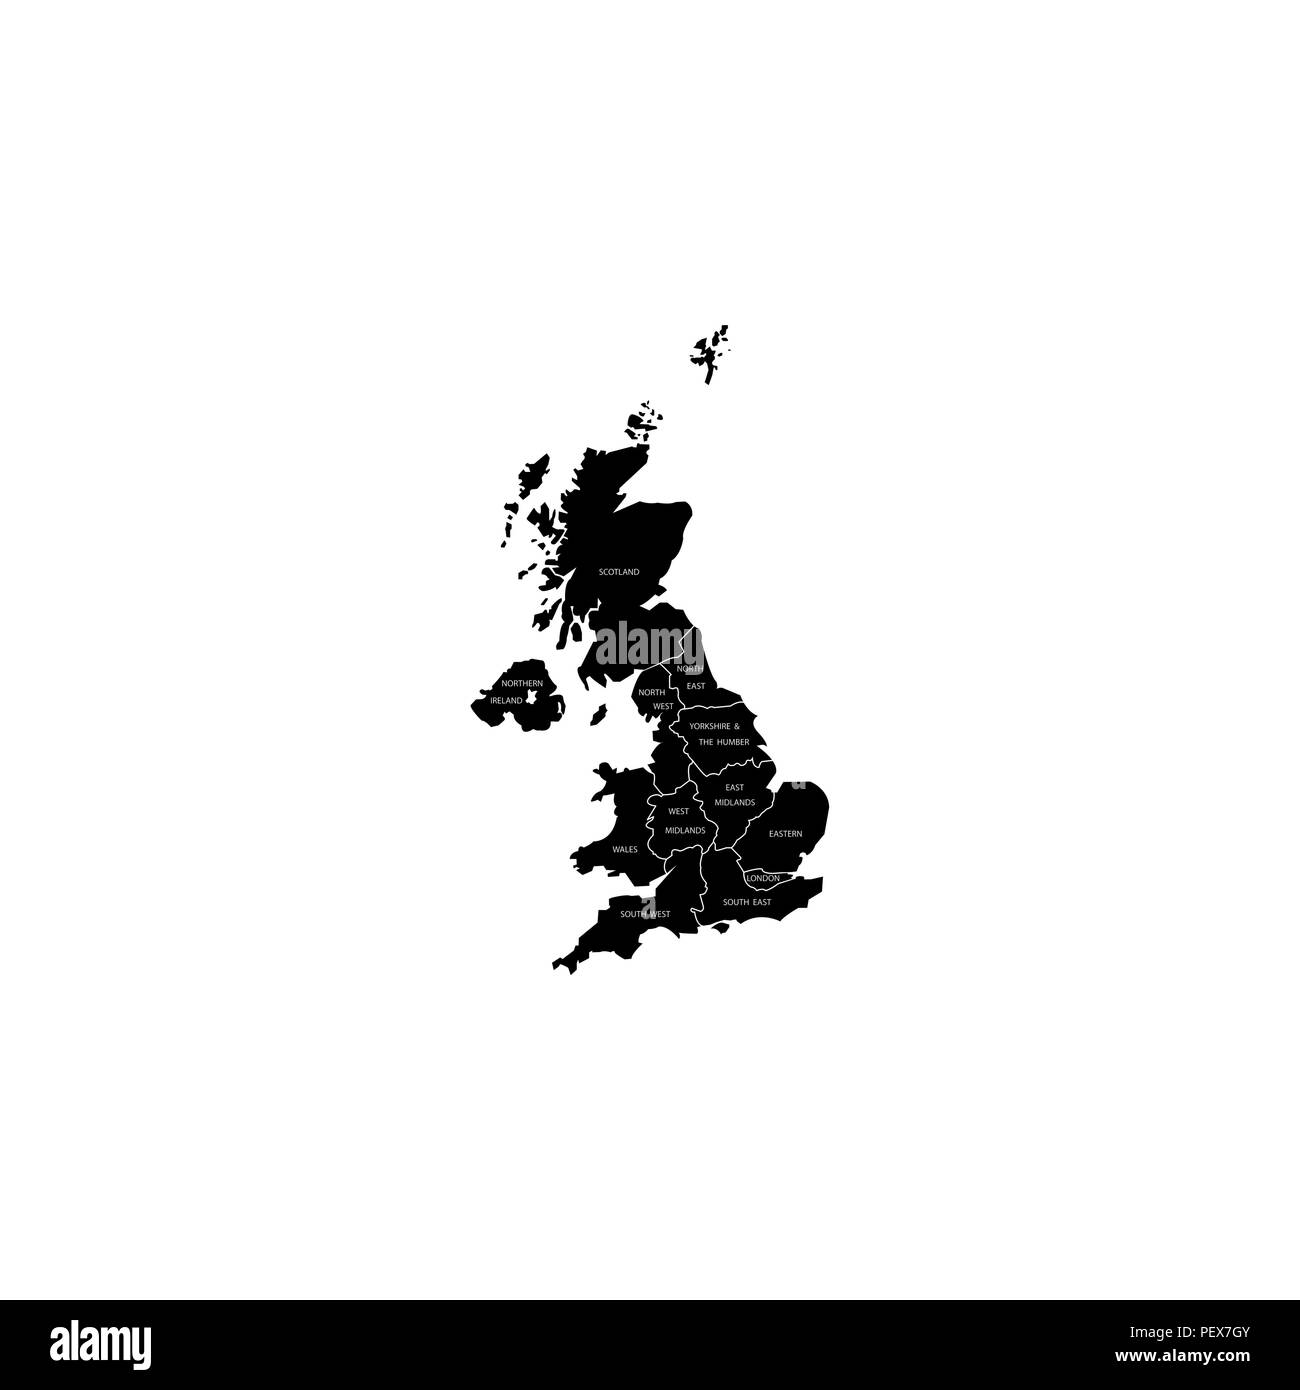 Vereinigtes Königreich Großbritannien Regionen Karte schwarz auf weißem Hintergrund Stock Vektor